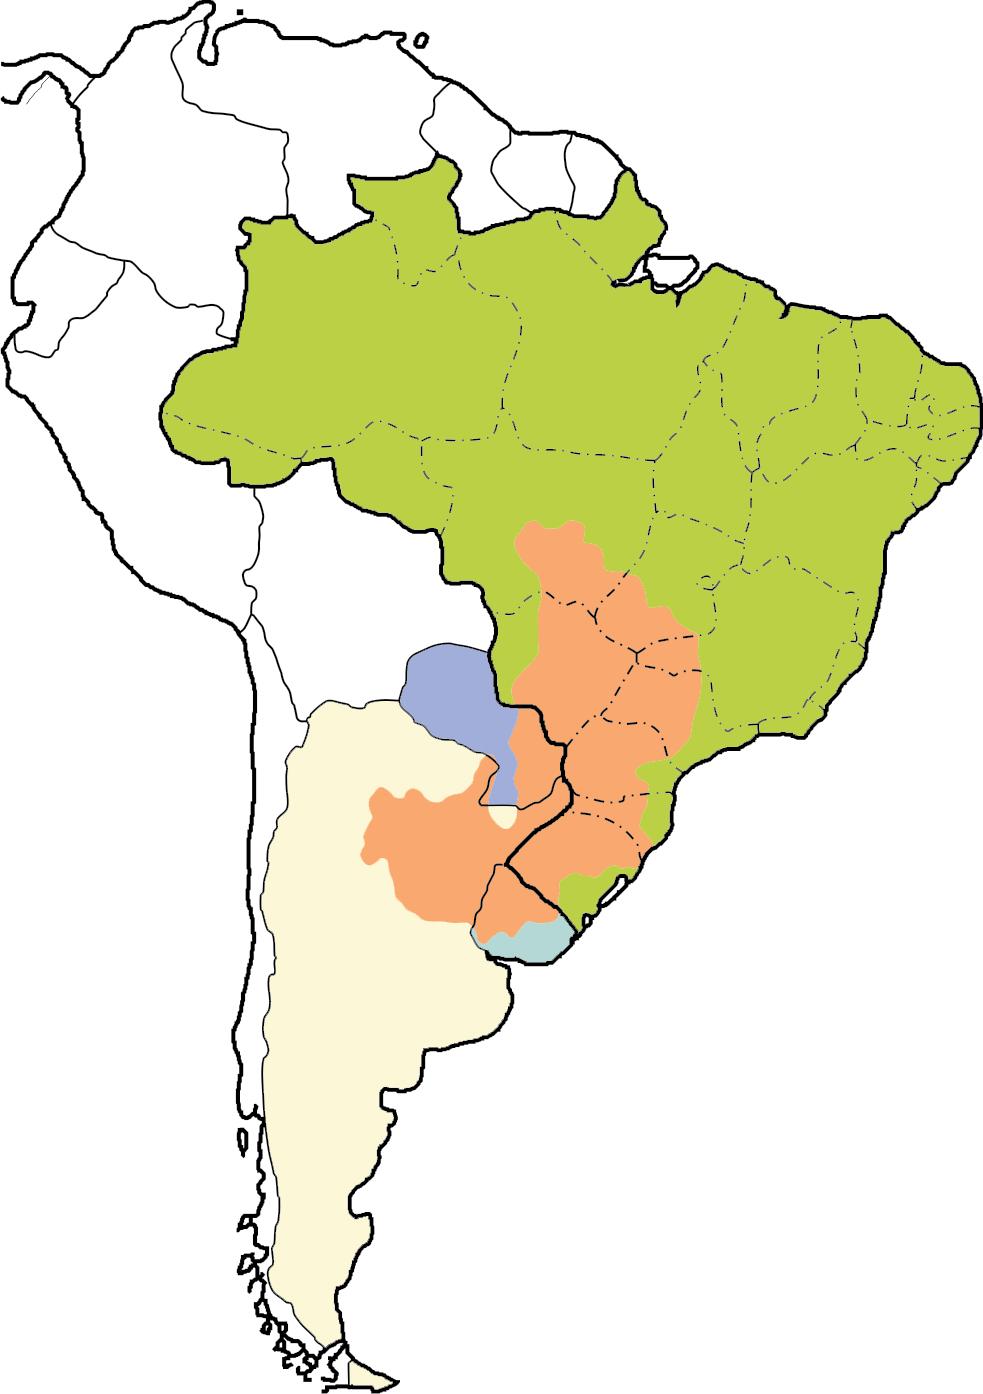 A maioria das rochas sedimentares do Estado do Paraná situa-se na Bacia Geológica do Paraná (fig.